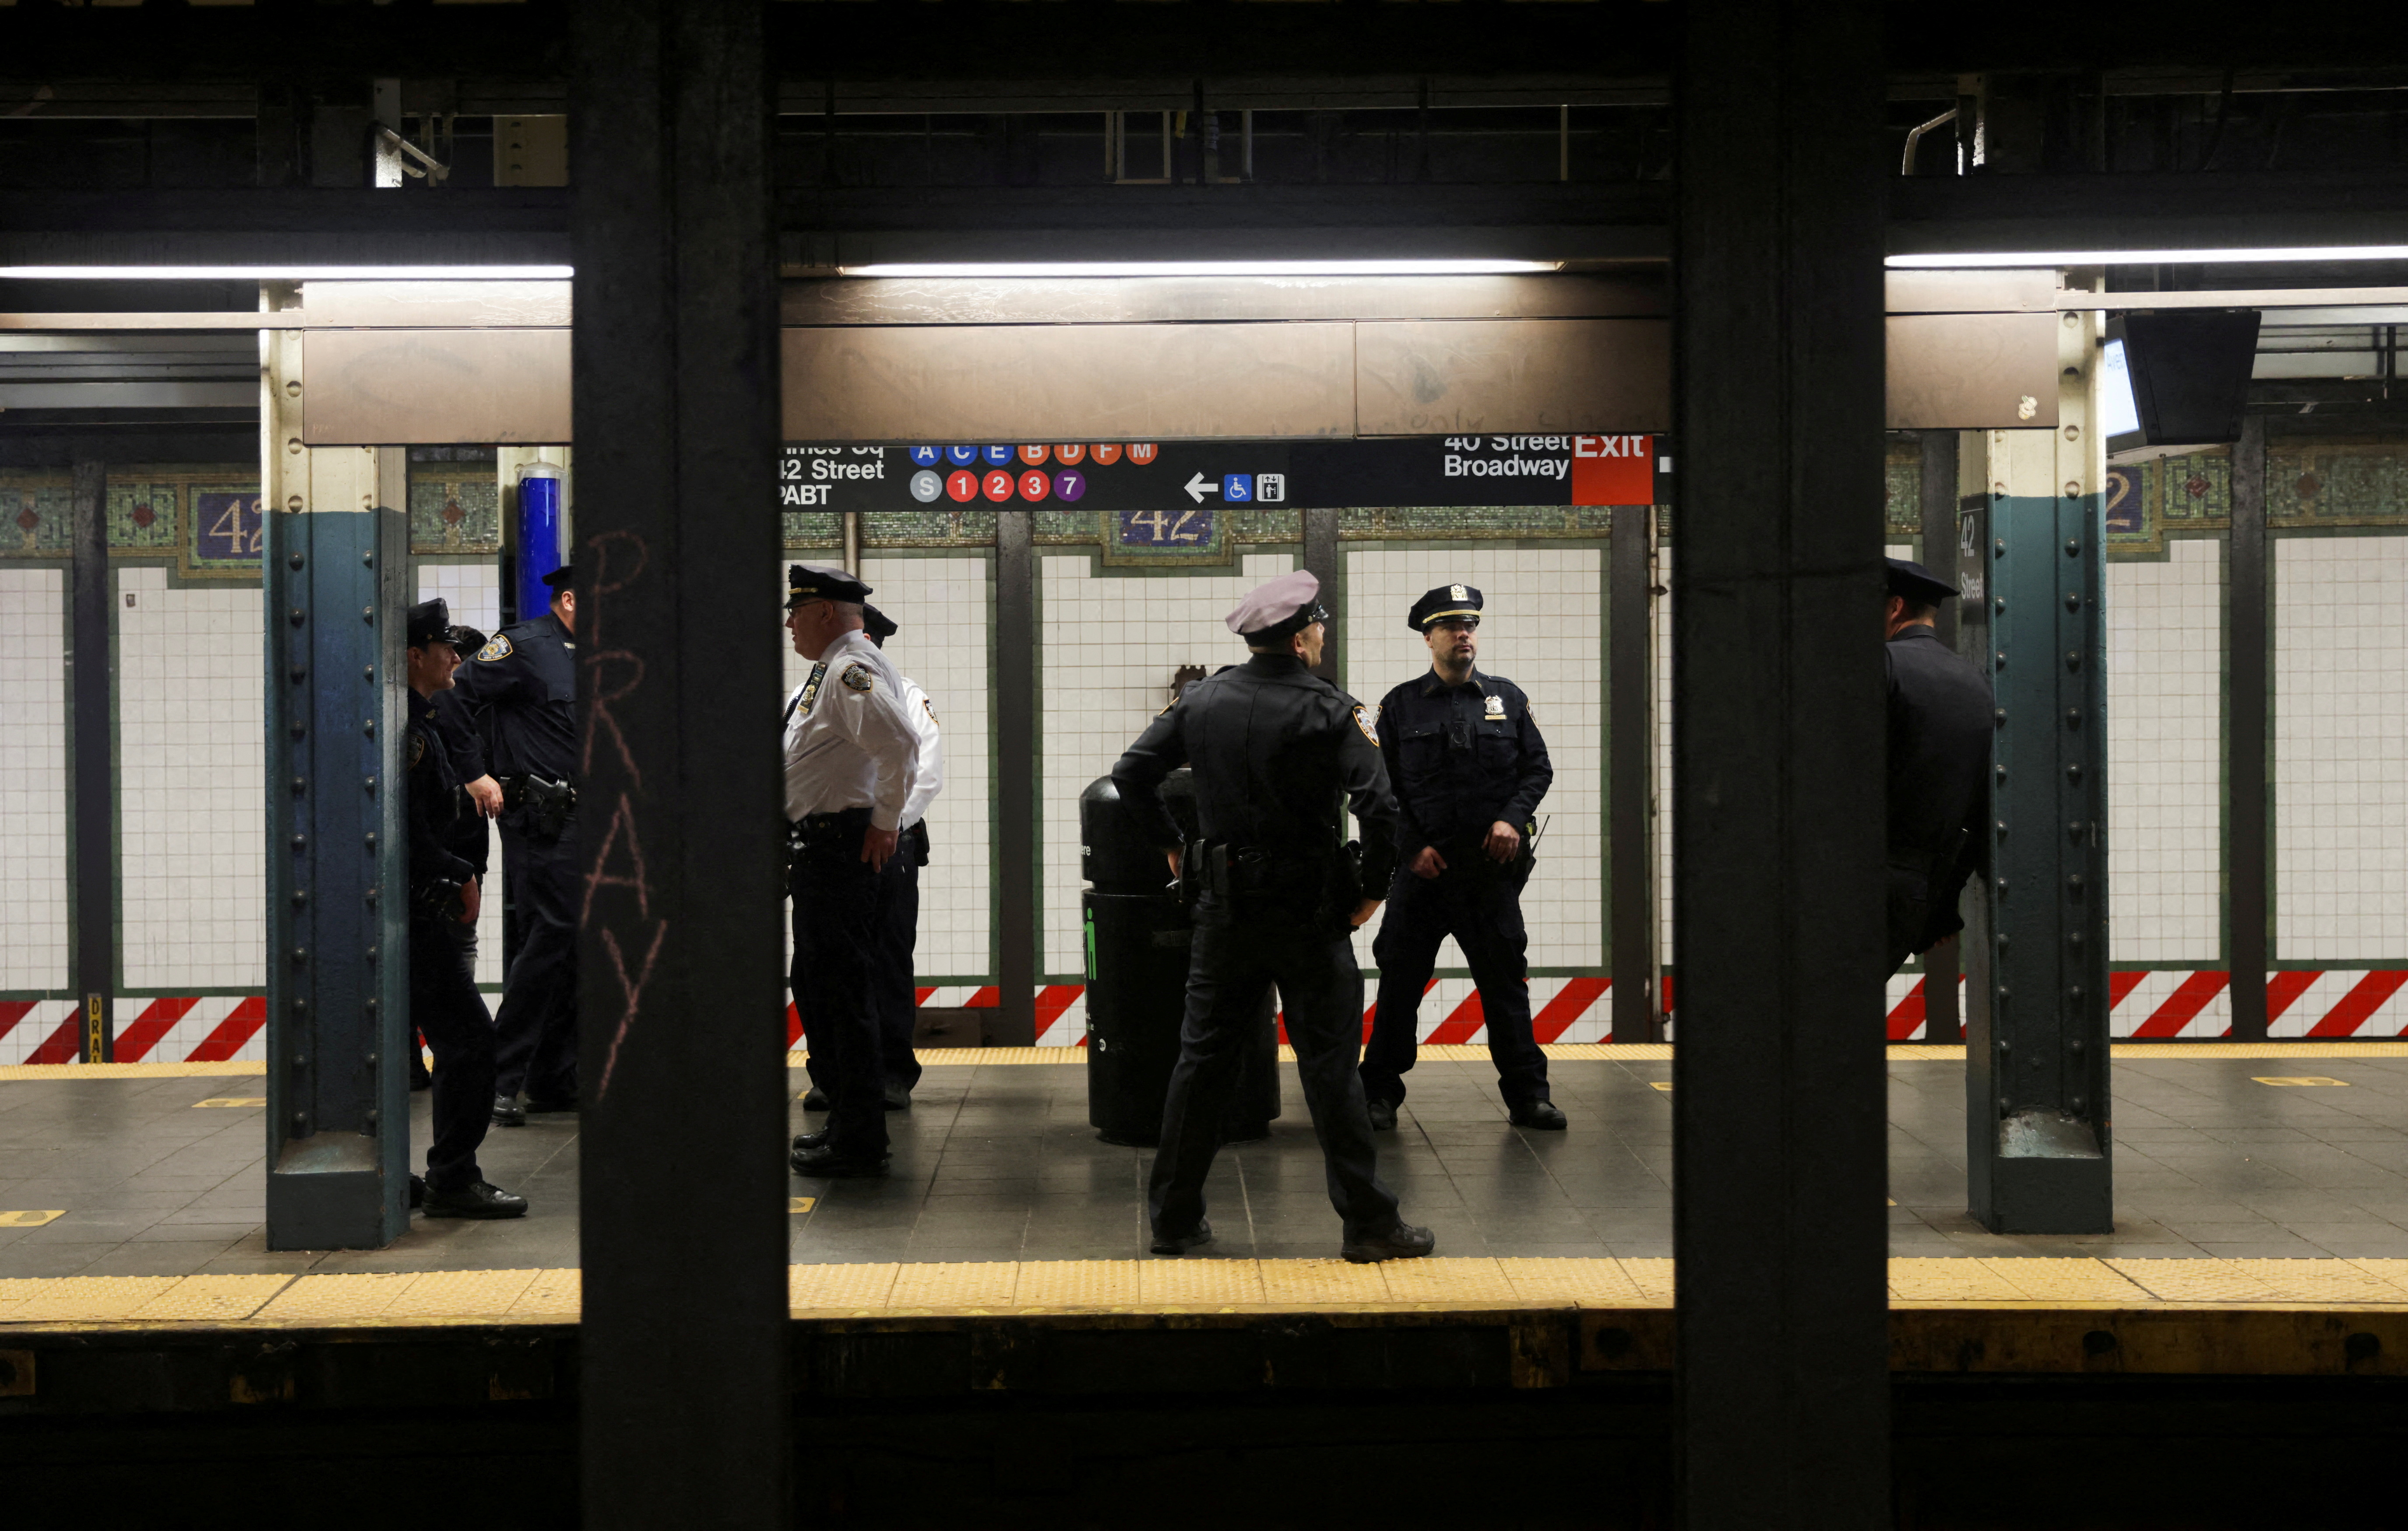 La telecamera di sicurezza della metropolitana di New York dove è avvenuta la sparatoria che ha lasciato 29 feriti non era operativa